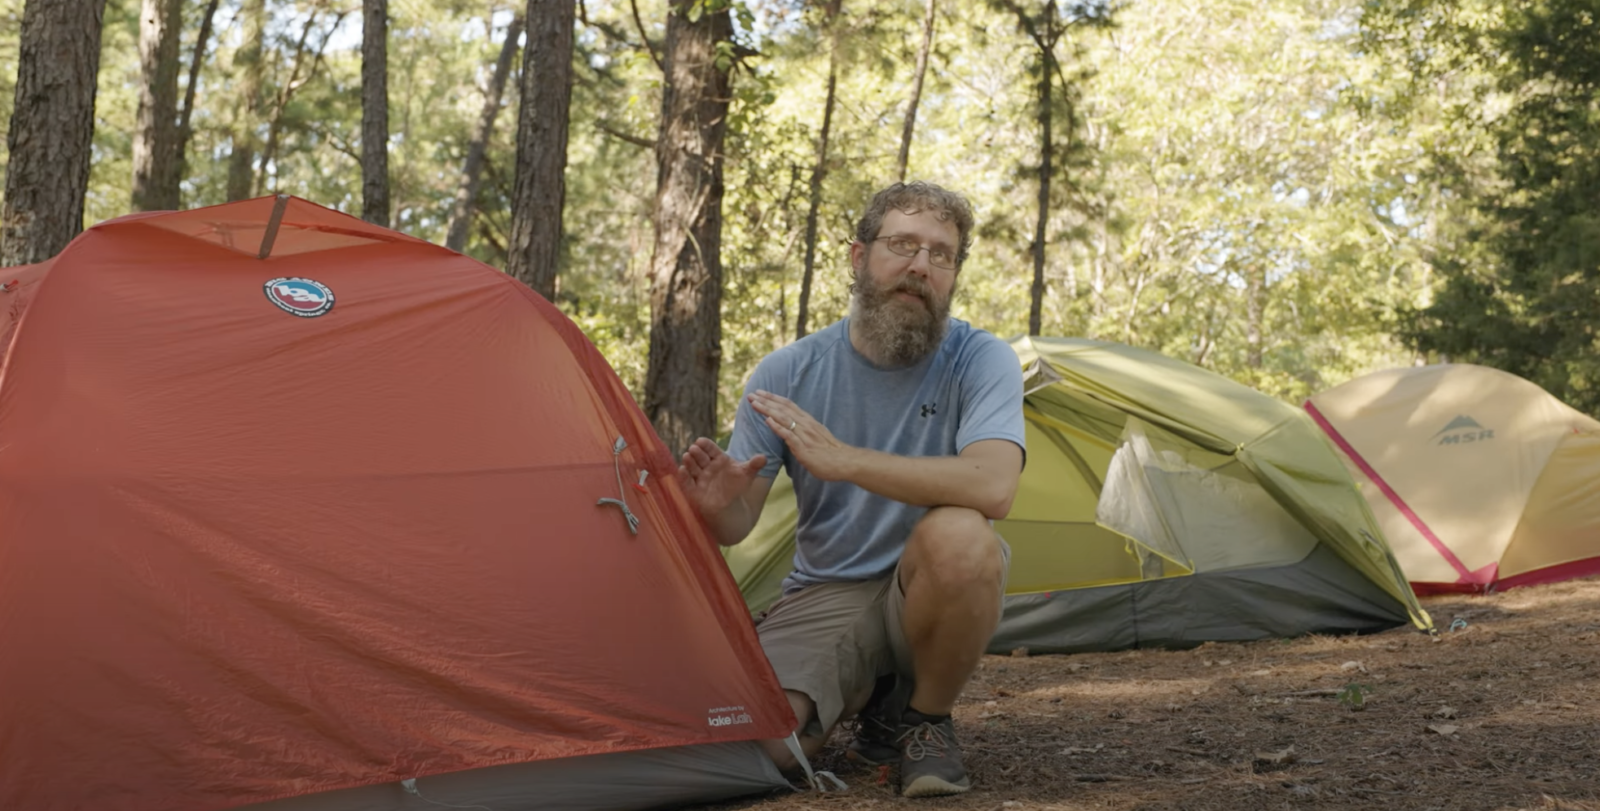 Steven reviews three tents